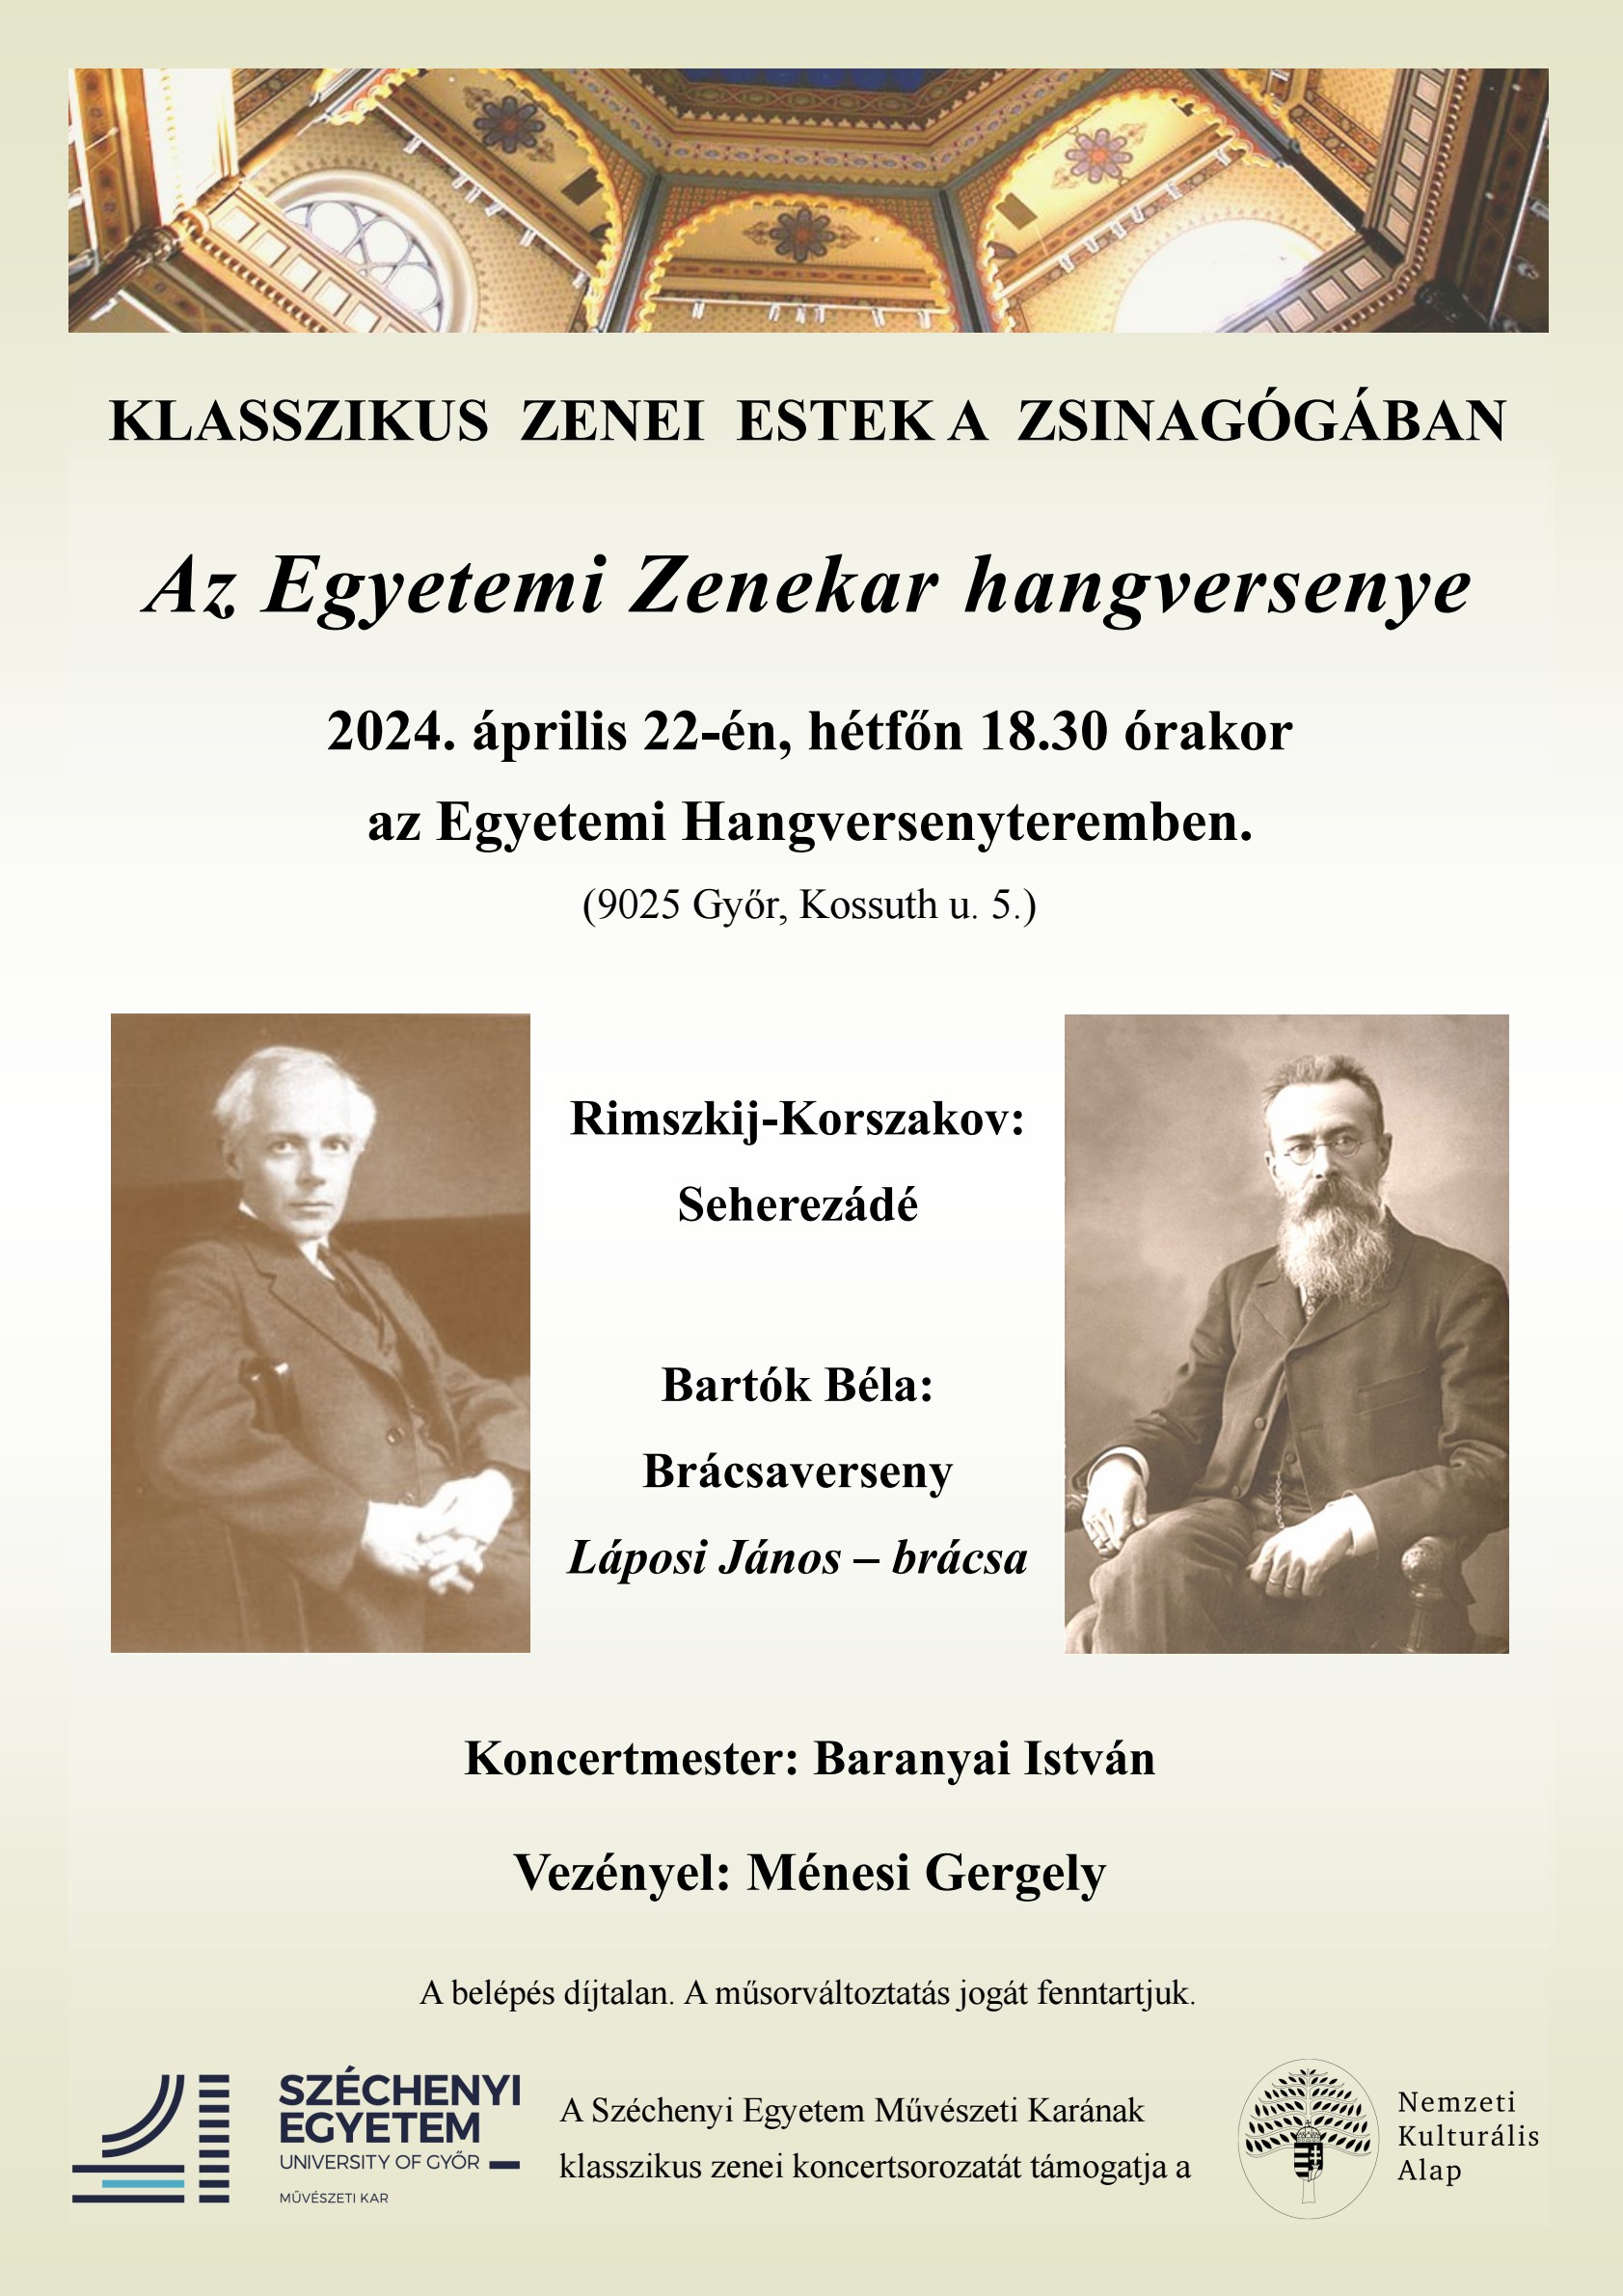 A Győri Egyetemi Zenekar hangversenye Rimszkij-Korszakov és Bartók műveiből - 2024.04.12.